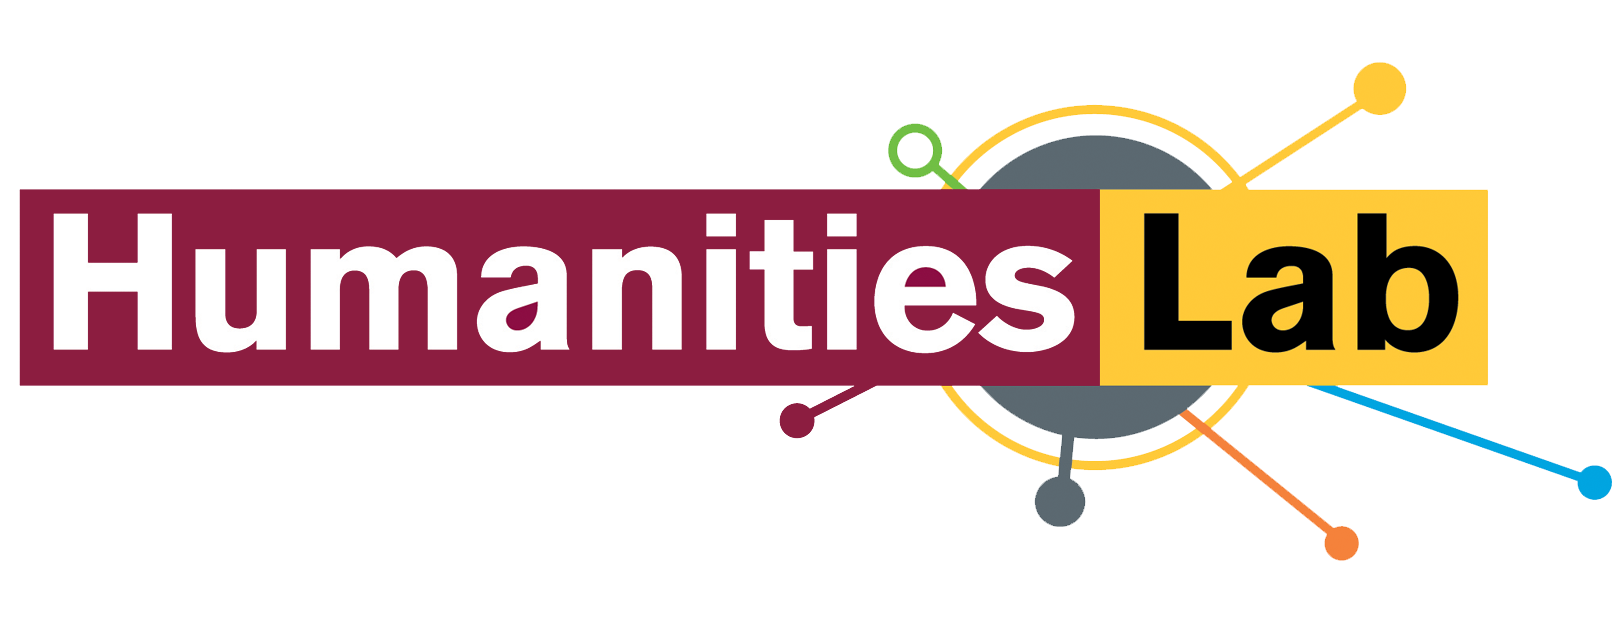 humanities asu lab logo